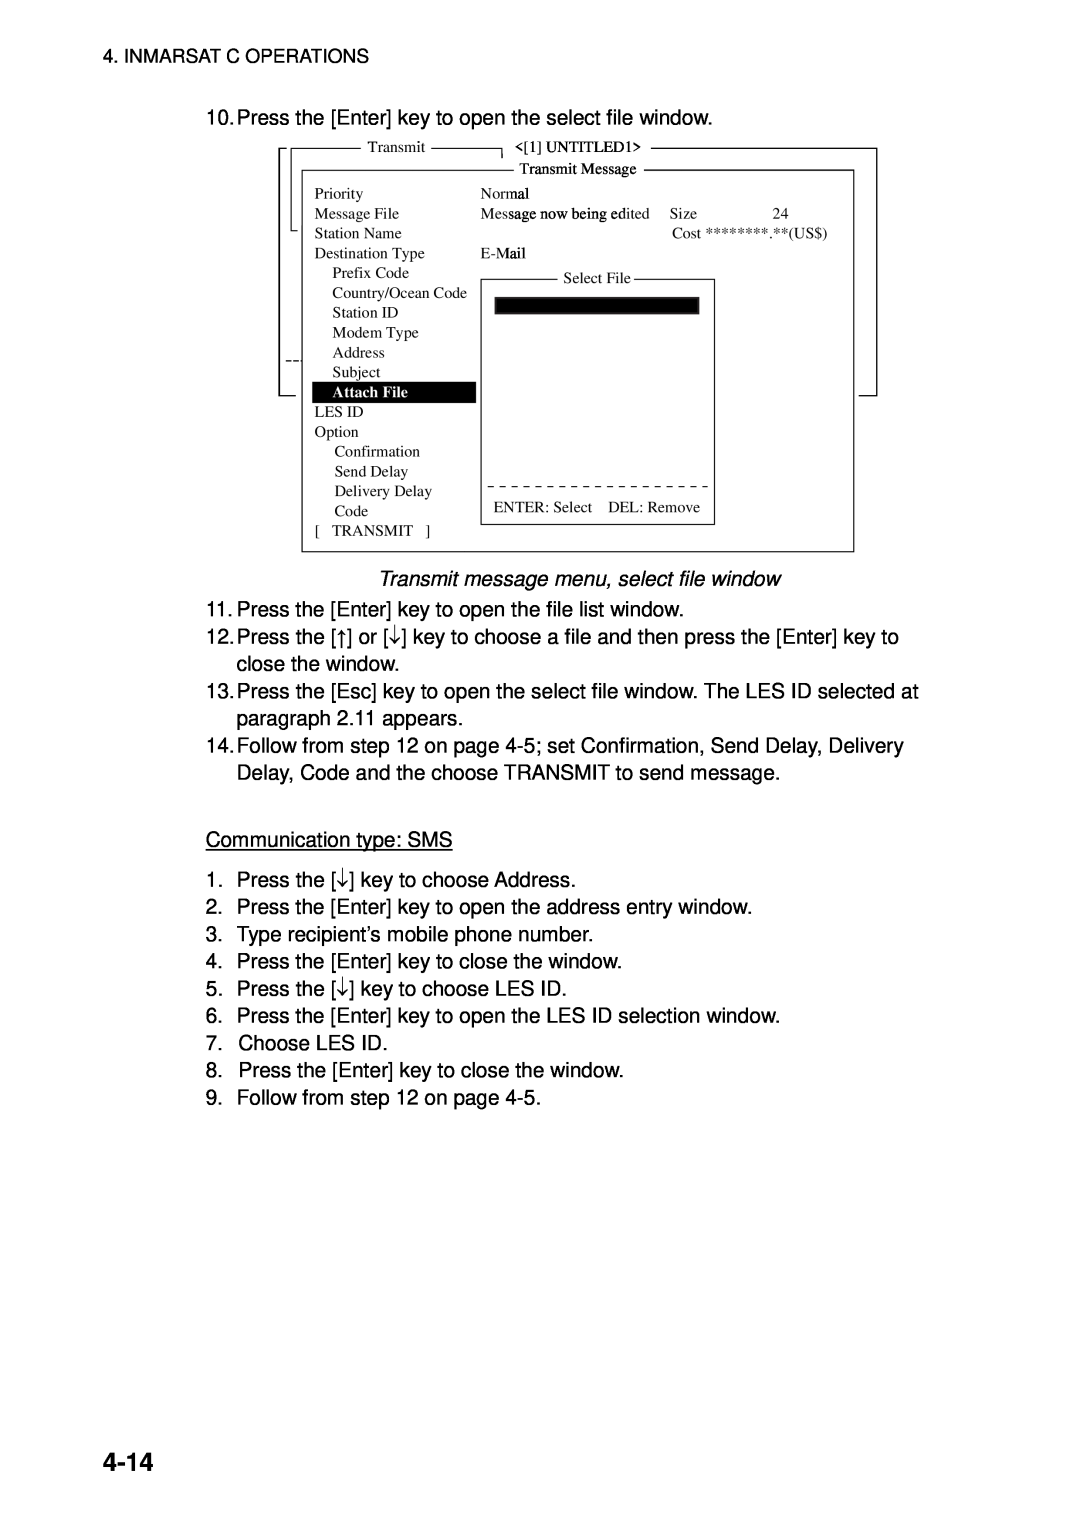 Furuno 16 manual 4-14, Transmit message menu, select file window 